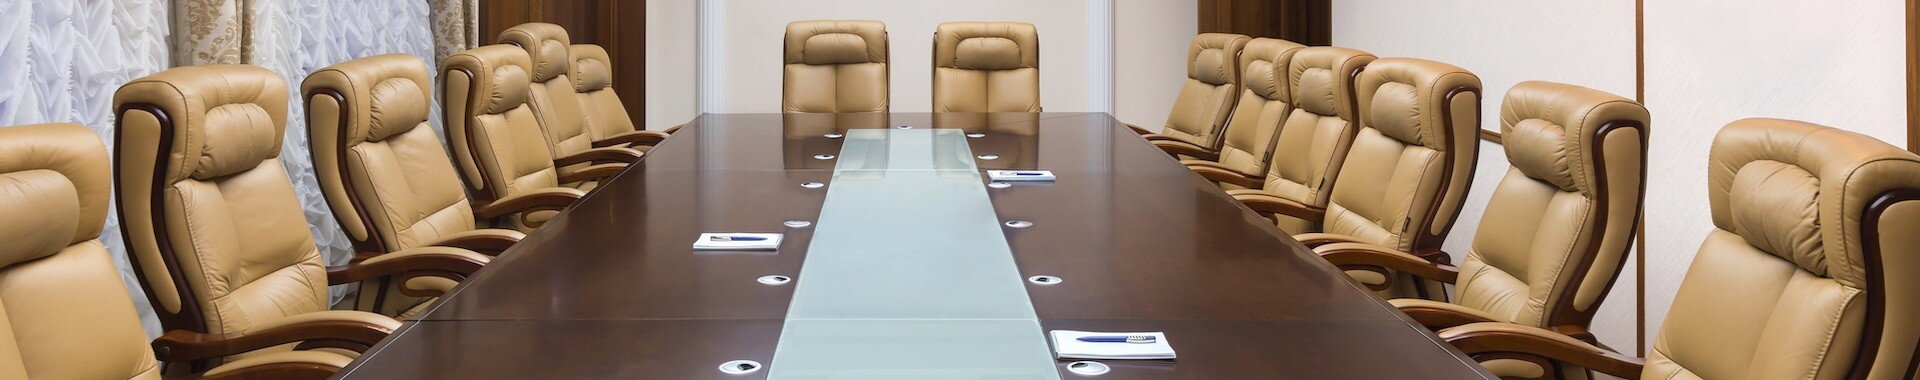 Meeting Room Rentals Worldwide